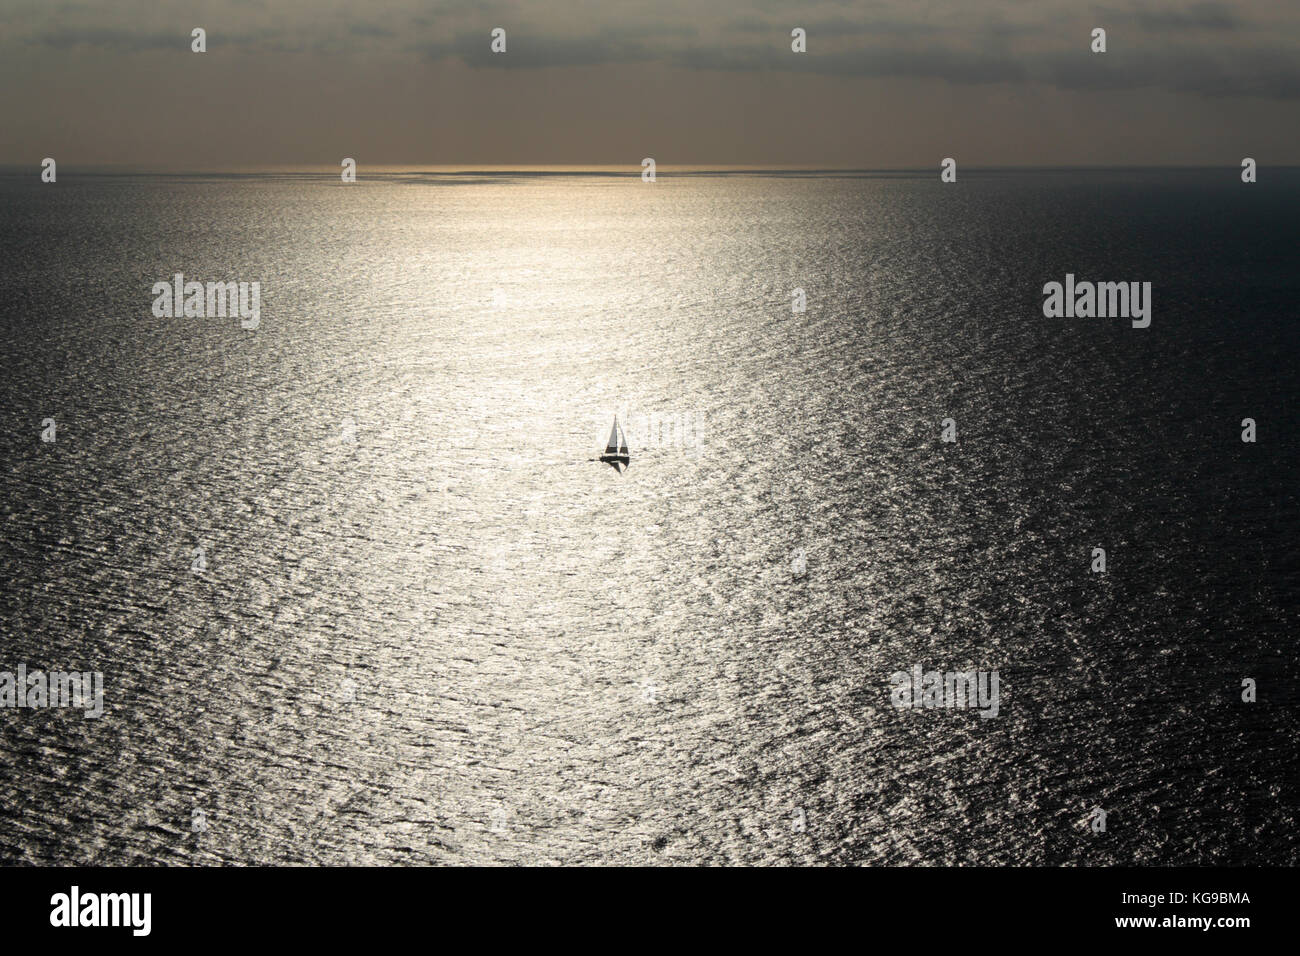 Velero o yate solitario atrapado en el sol refleja en una amplia extensión de mar Foto de stock